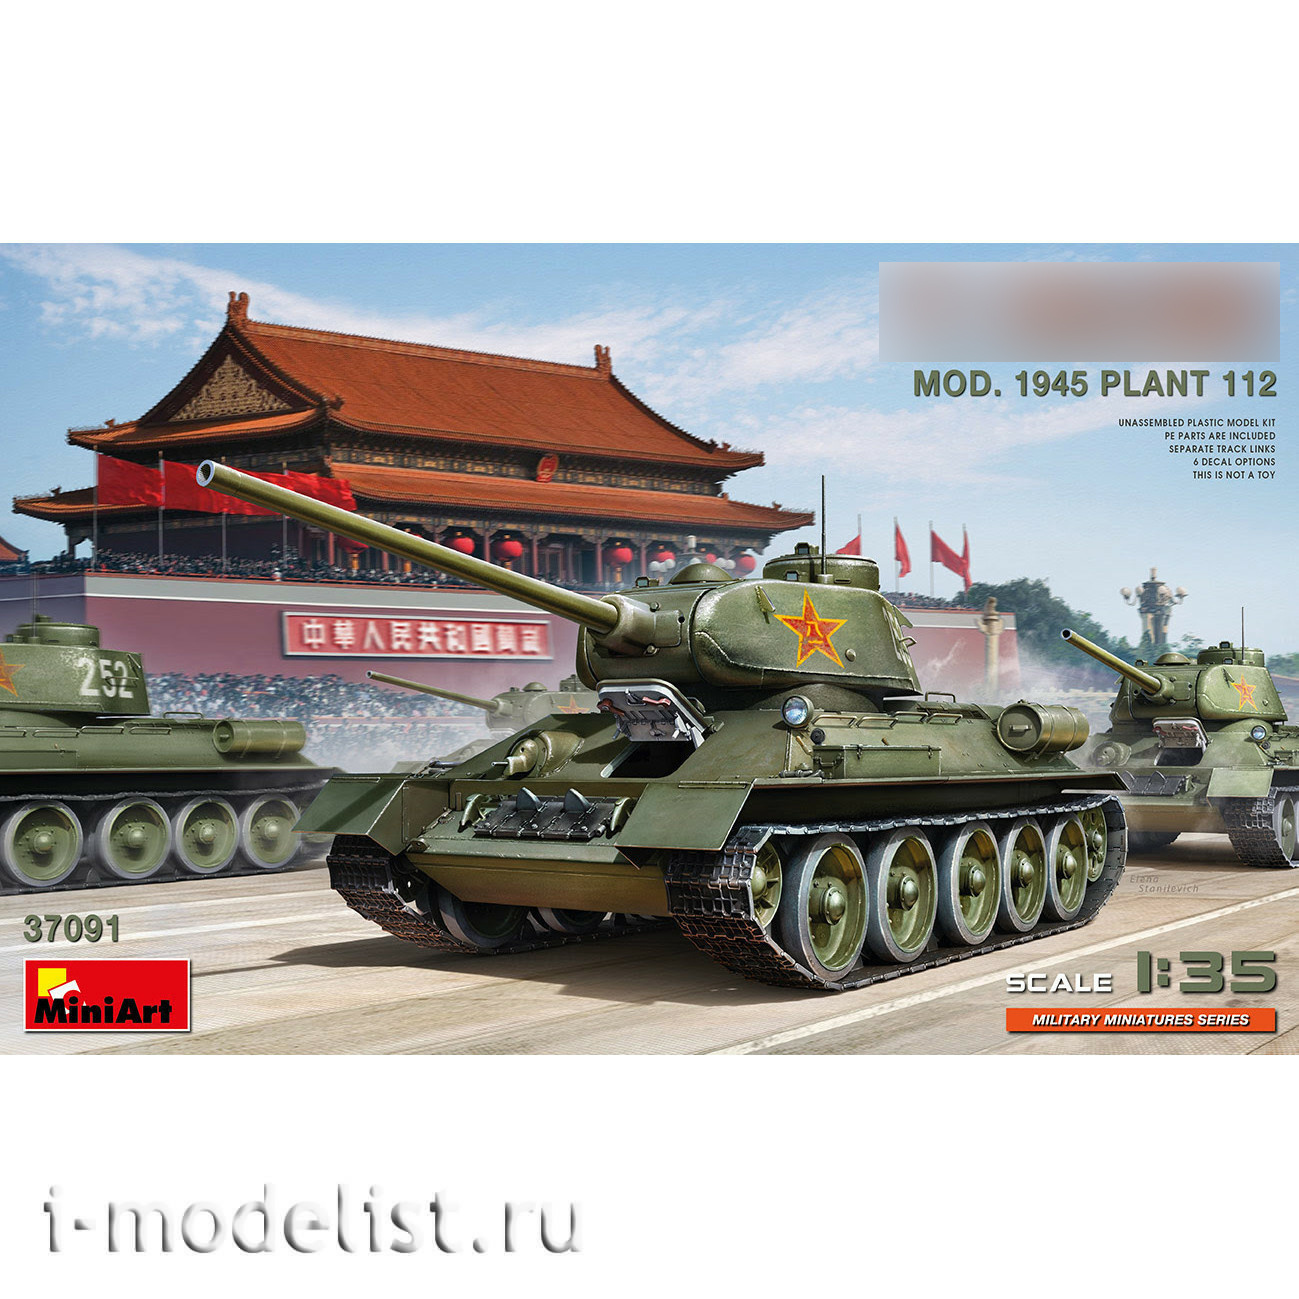 37091 MiniArt 1/35 Танк 34/85 завода 112 (1945 года)